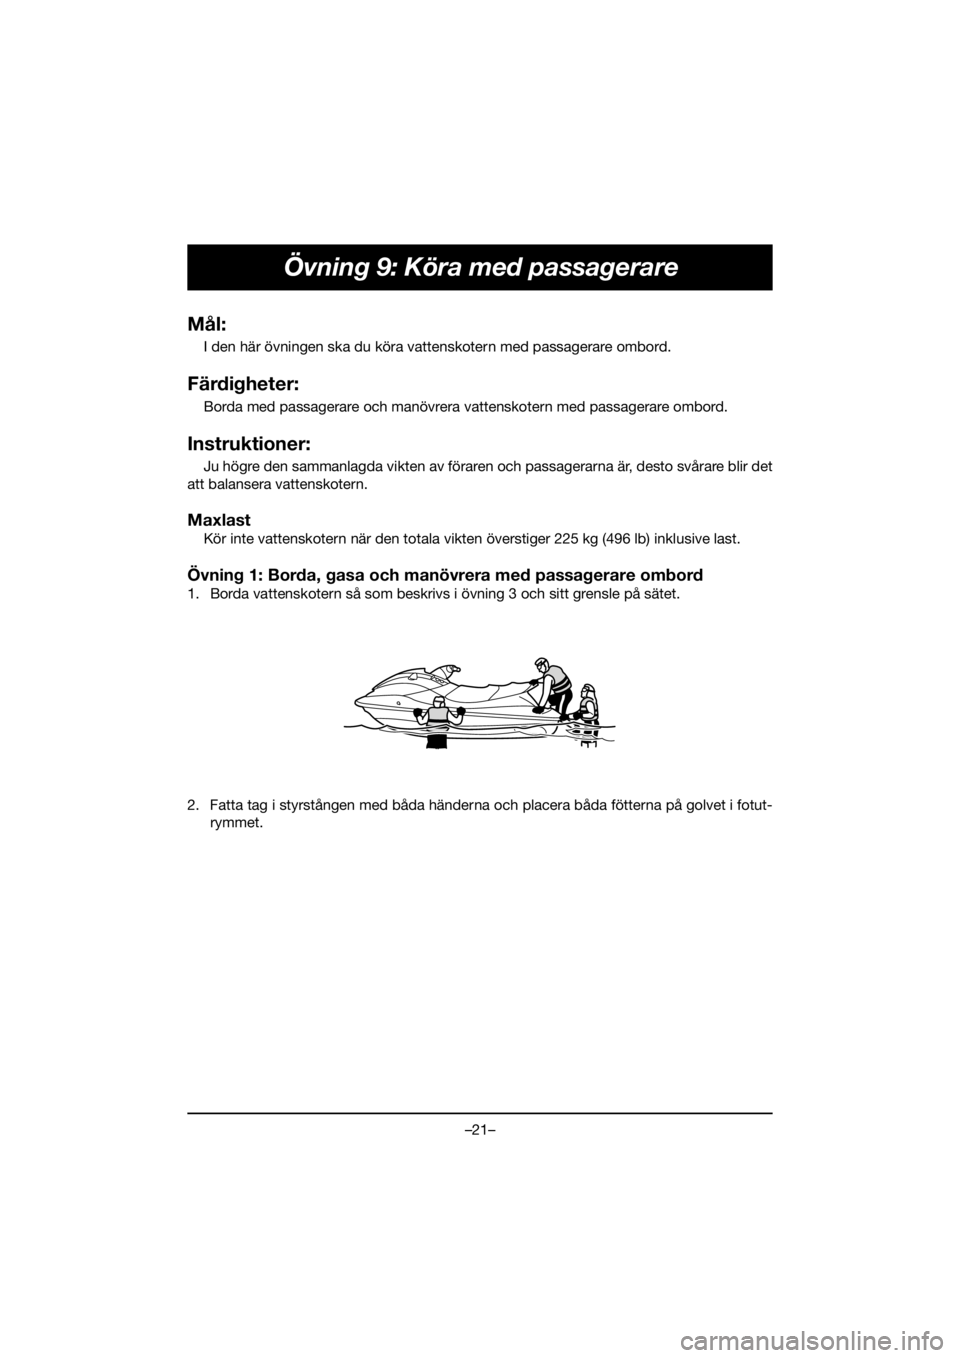 YAMAHA EX 2021  Manuale de Empleo (in Spanish) –21–
Övning 9: Köra med passagerare
Mål:
I den här övningen ska du köra vattenskotern med passagerare ombord.
Färdigheter:
Borda med passagerare och manövrera vattenskotern med passagerare